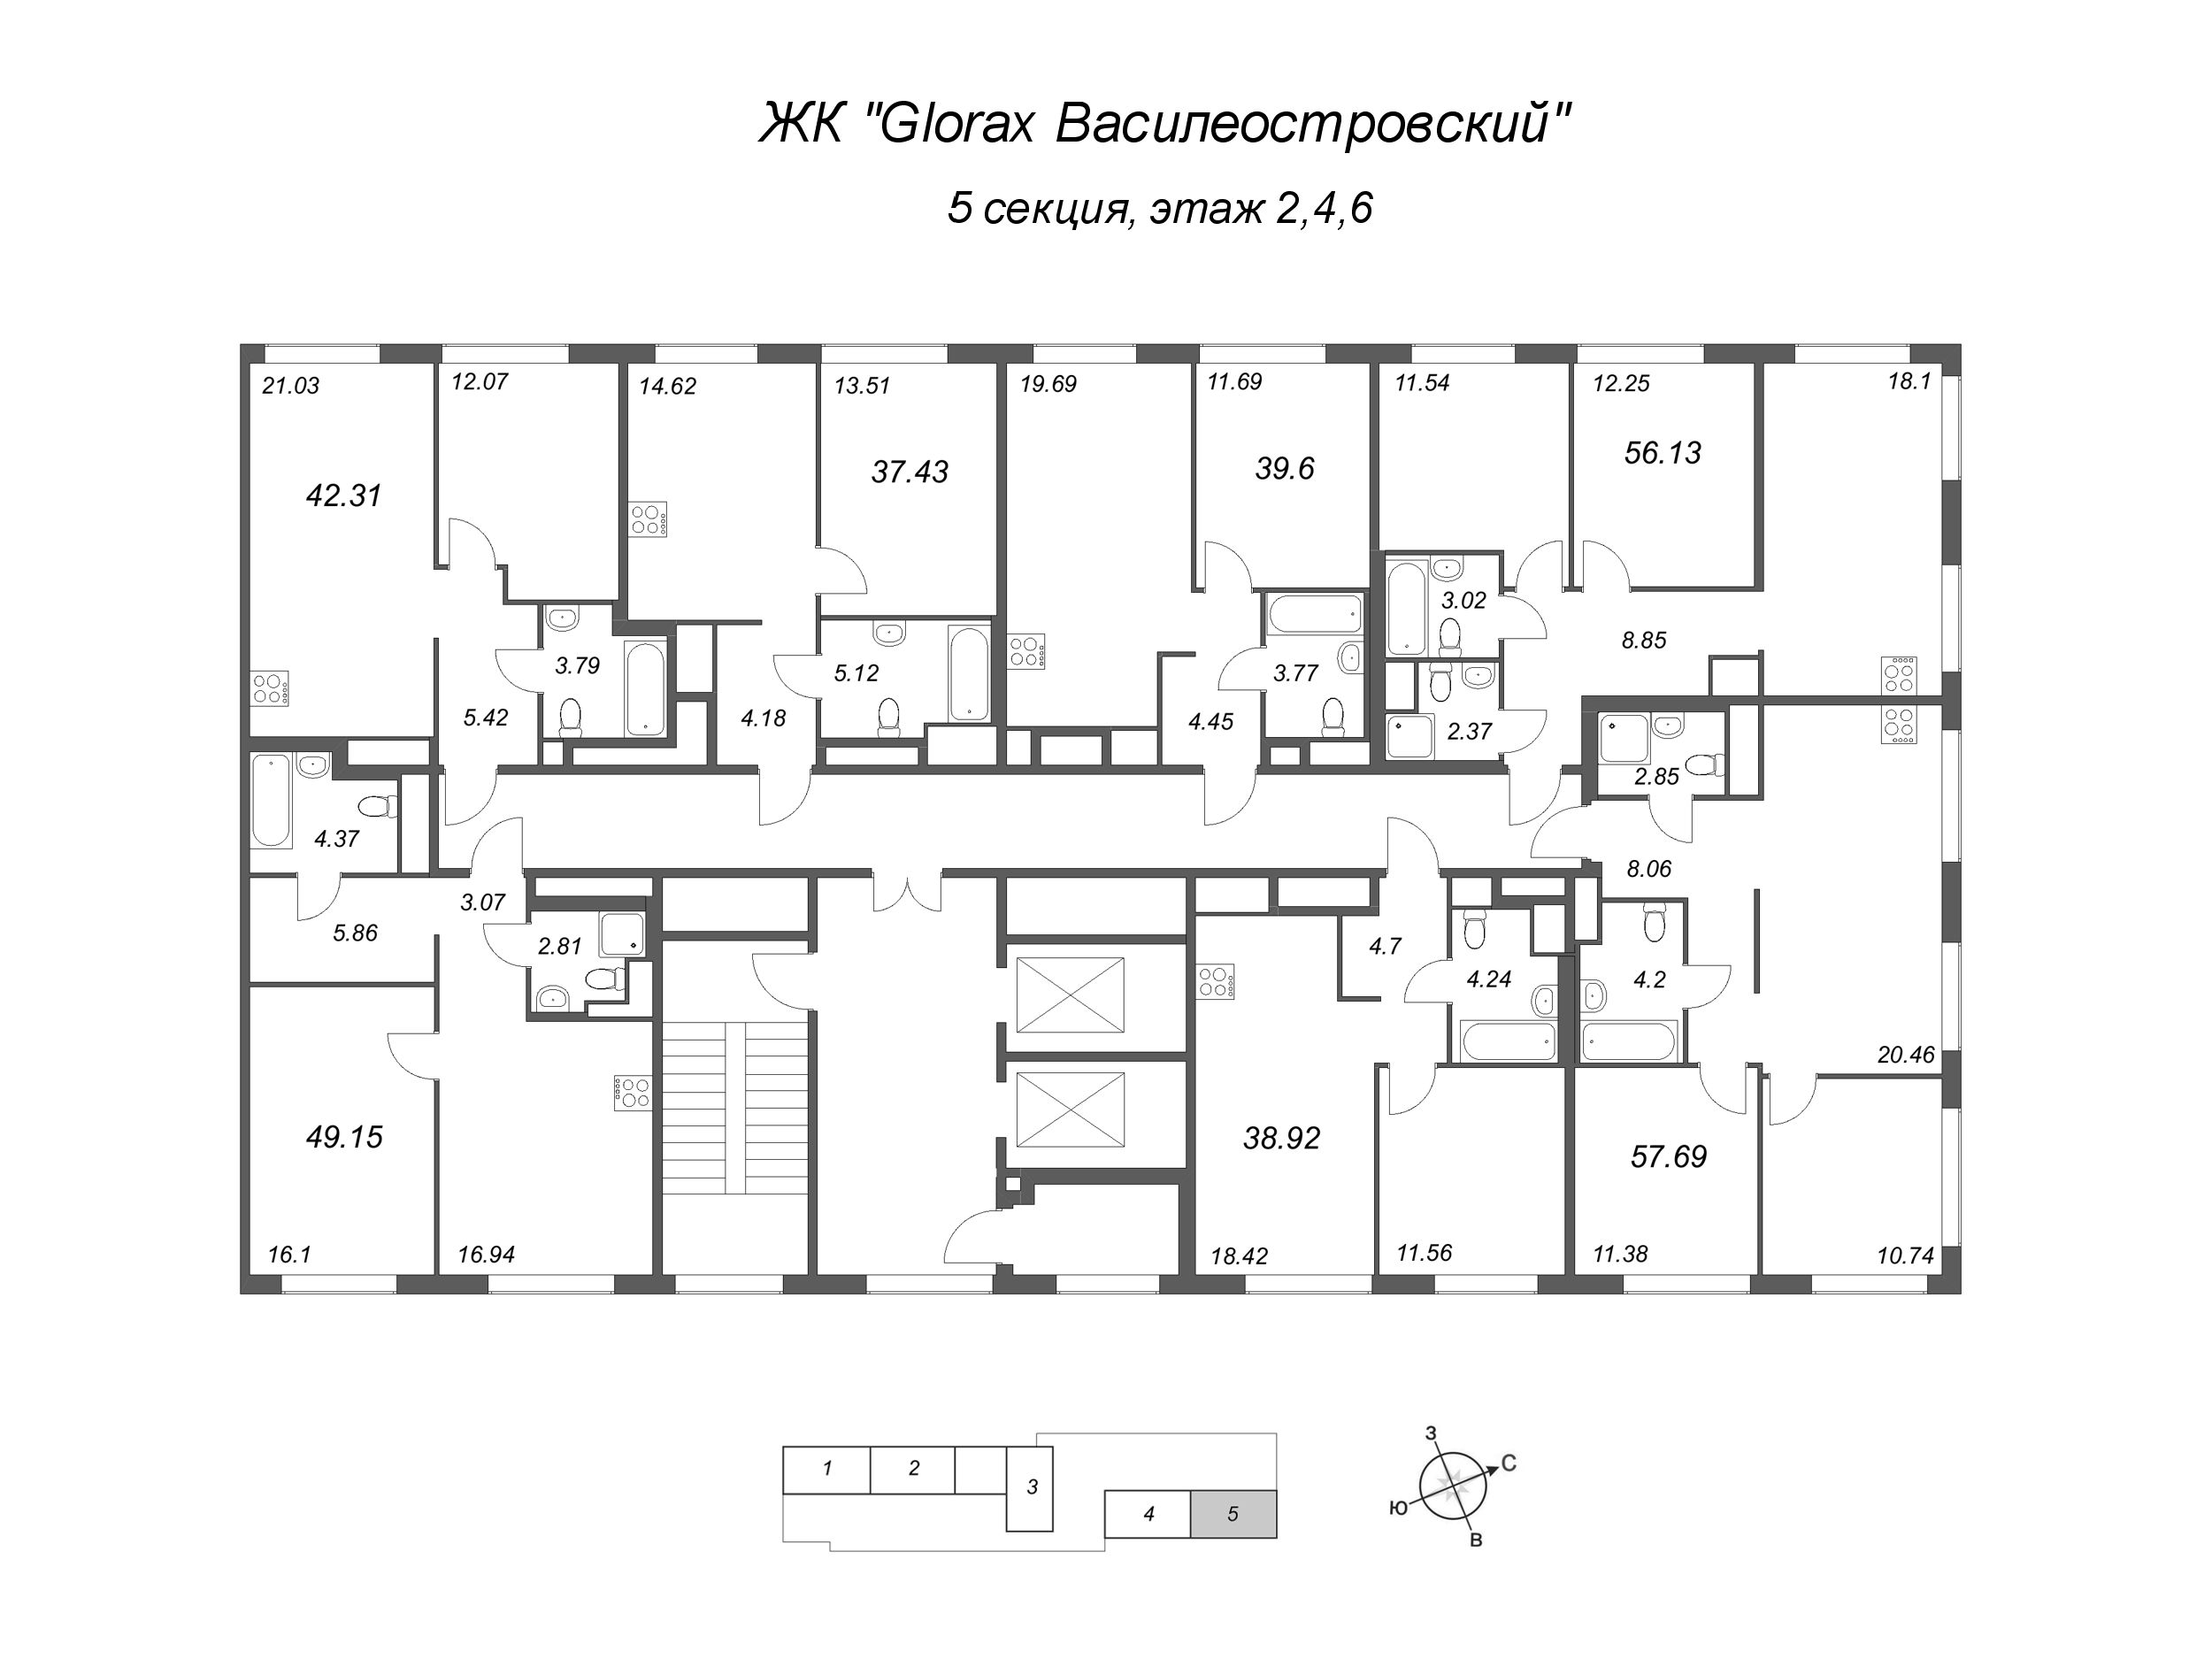 2-комнатная (Евро) квартира, 49.15 м² в ЖК "GloraX Василеостровский" - планировка этажа